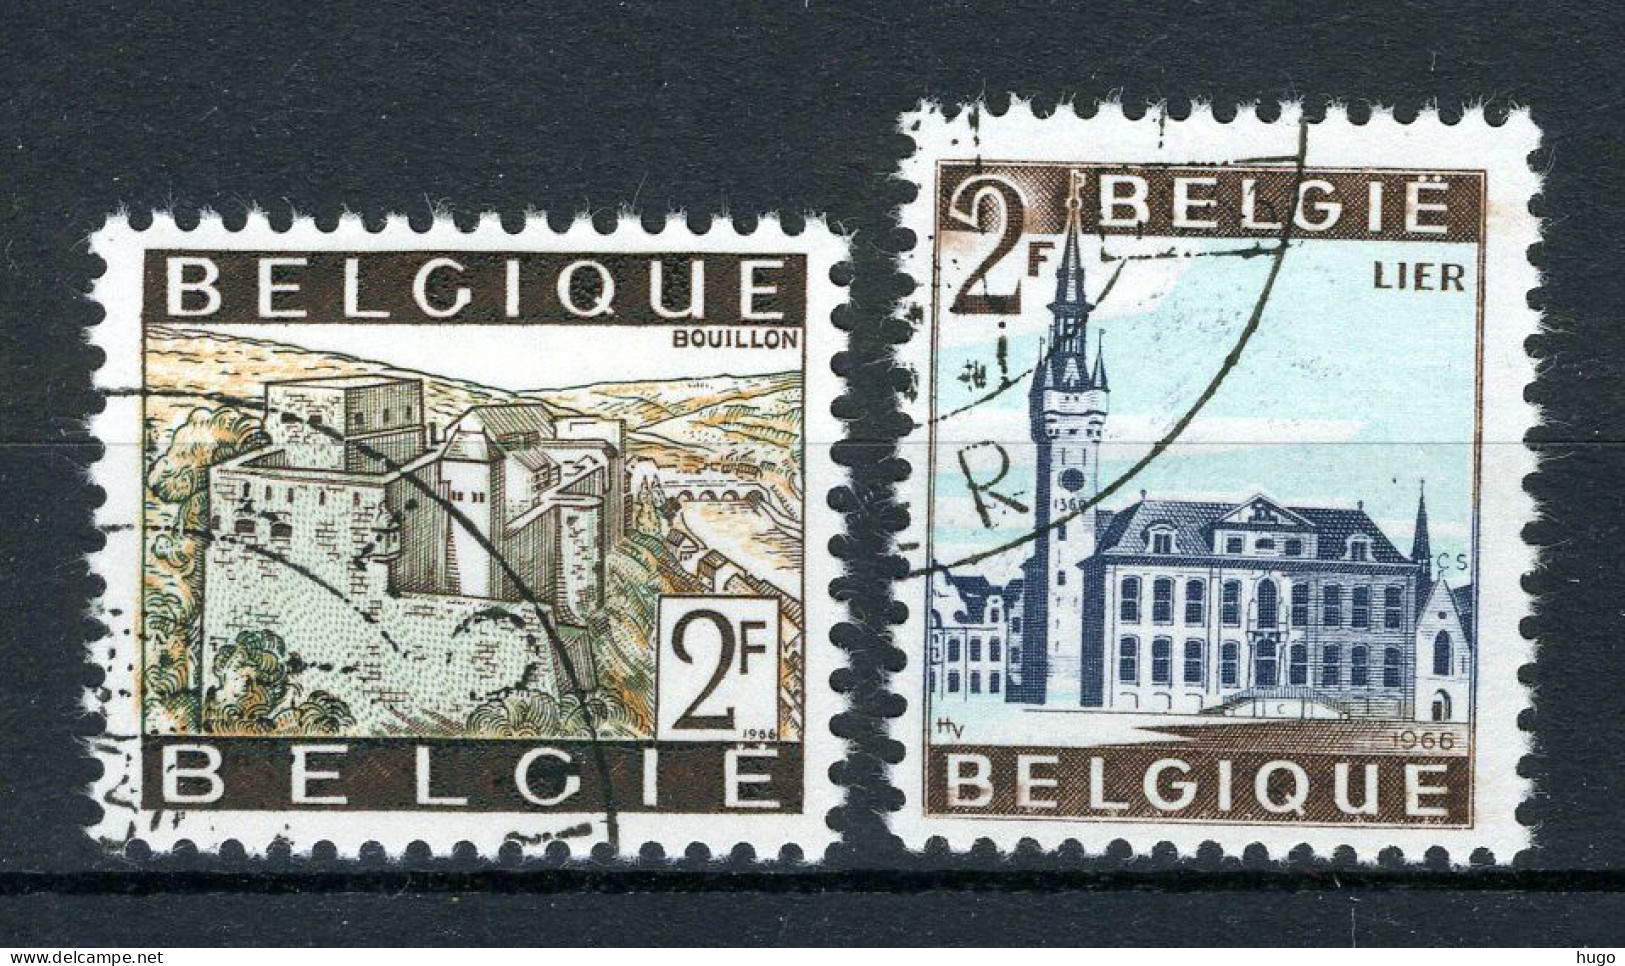 (B) 1397/1398 MH FDC 1966 - Toeristische Uitgifte. - Neufs